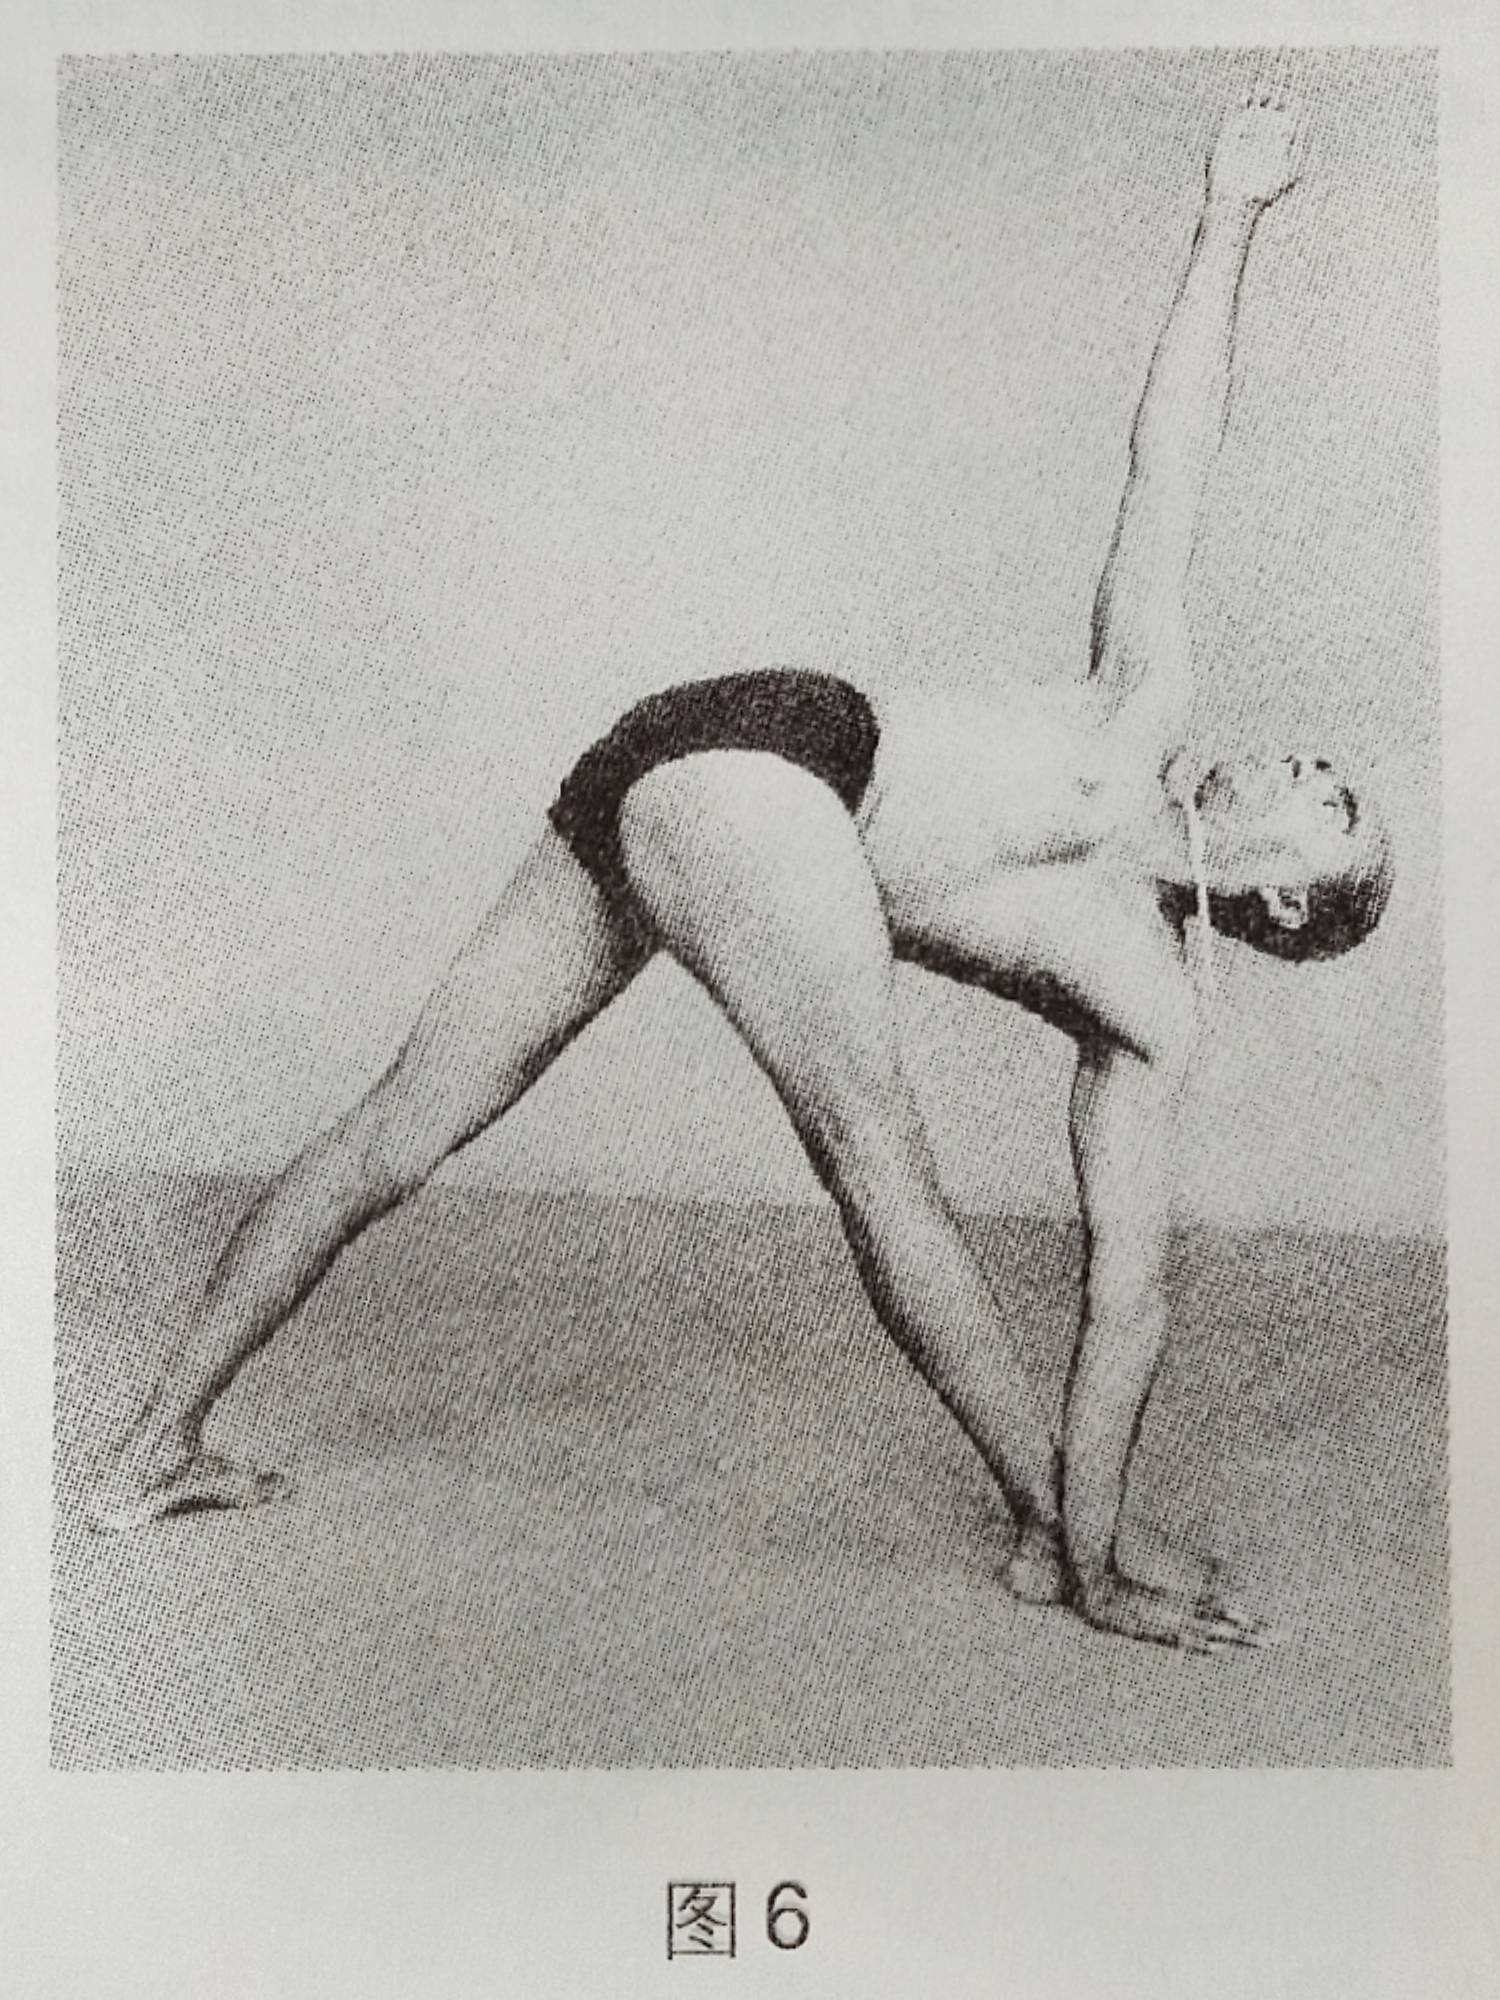 Паривритта триконасана или поза перевернутого треугольника в йоге: техника выполнения, польза, противопоказания